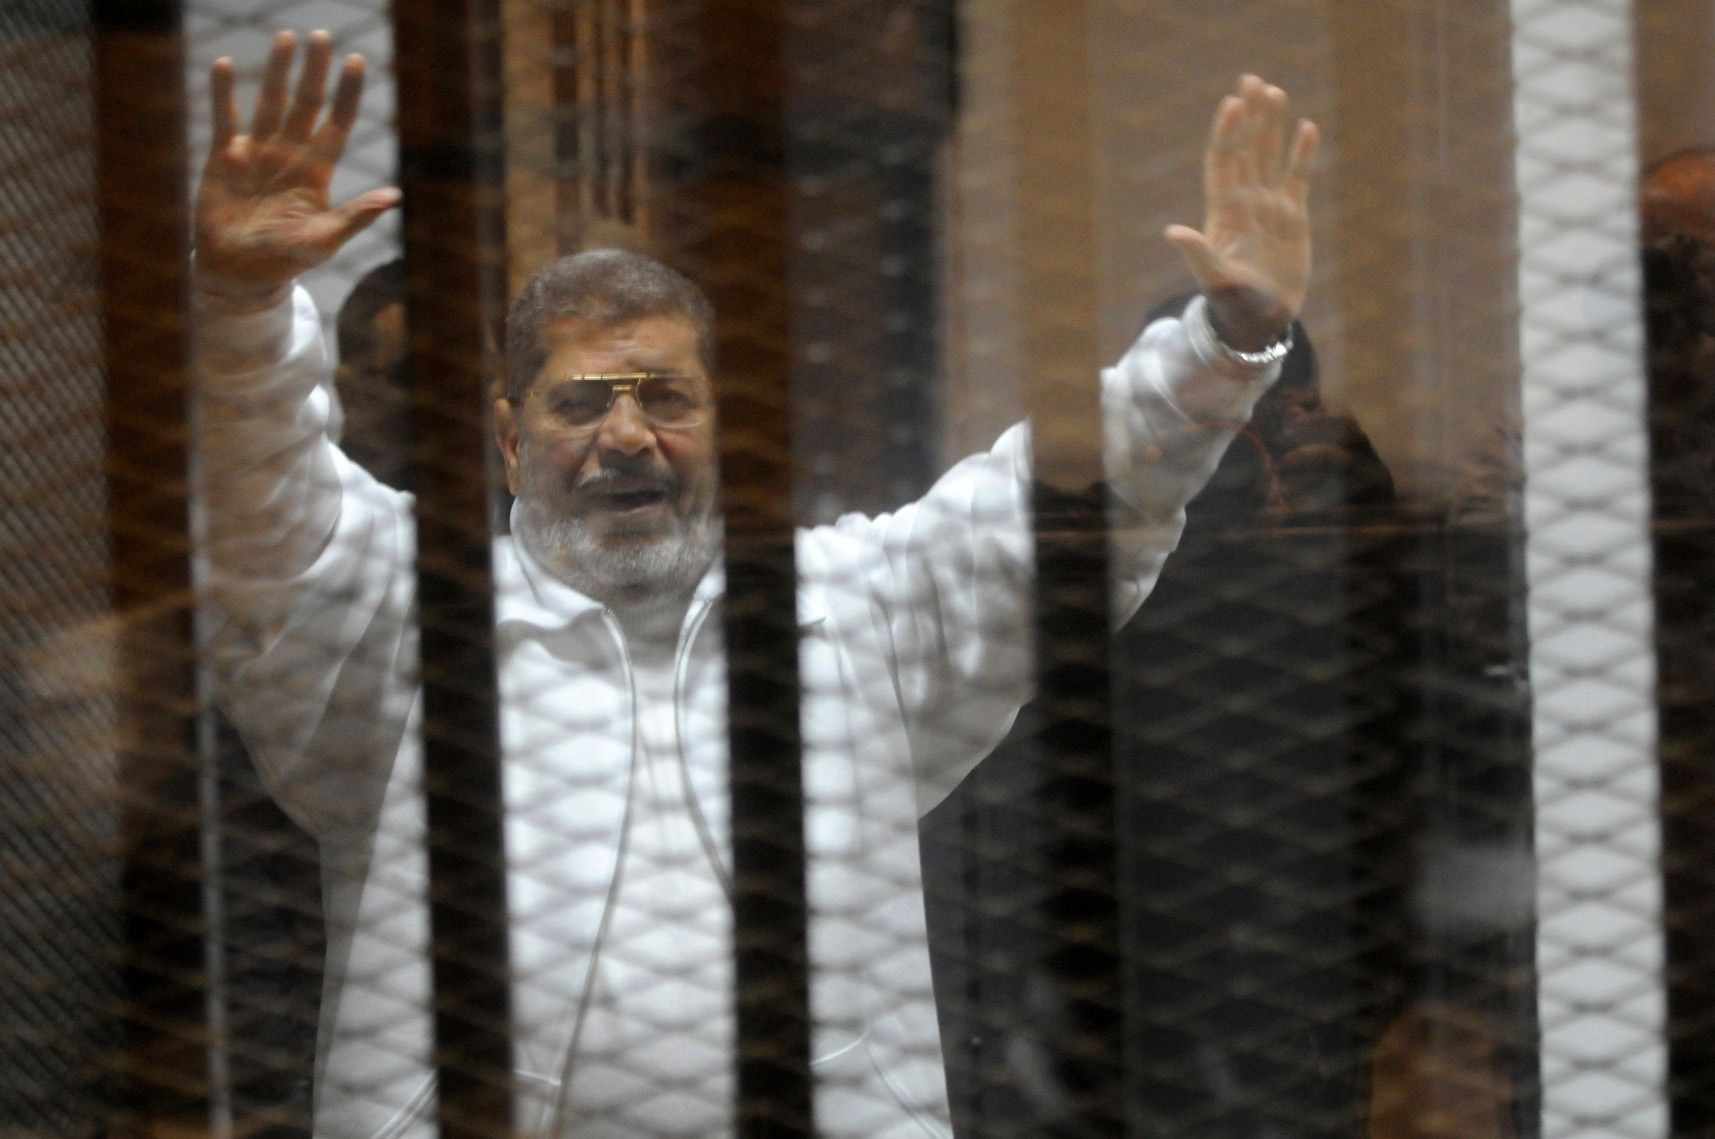 احتمال لغو تابعیت محمد مرسی توسط دولت مصر